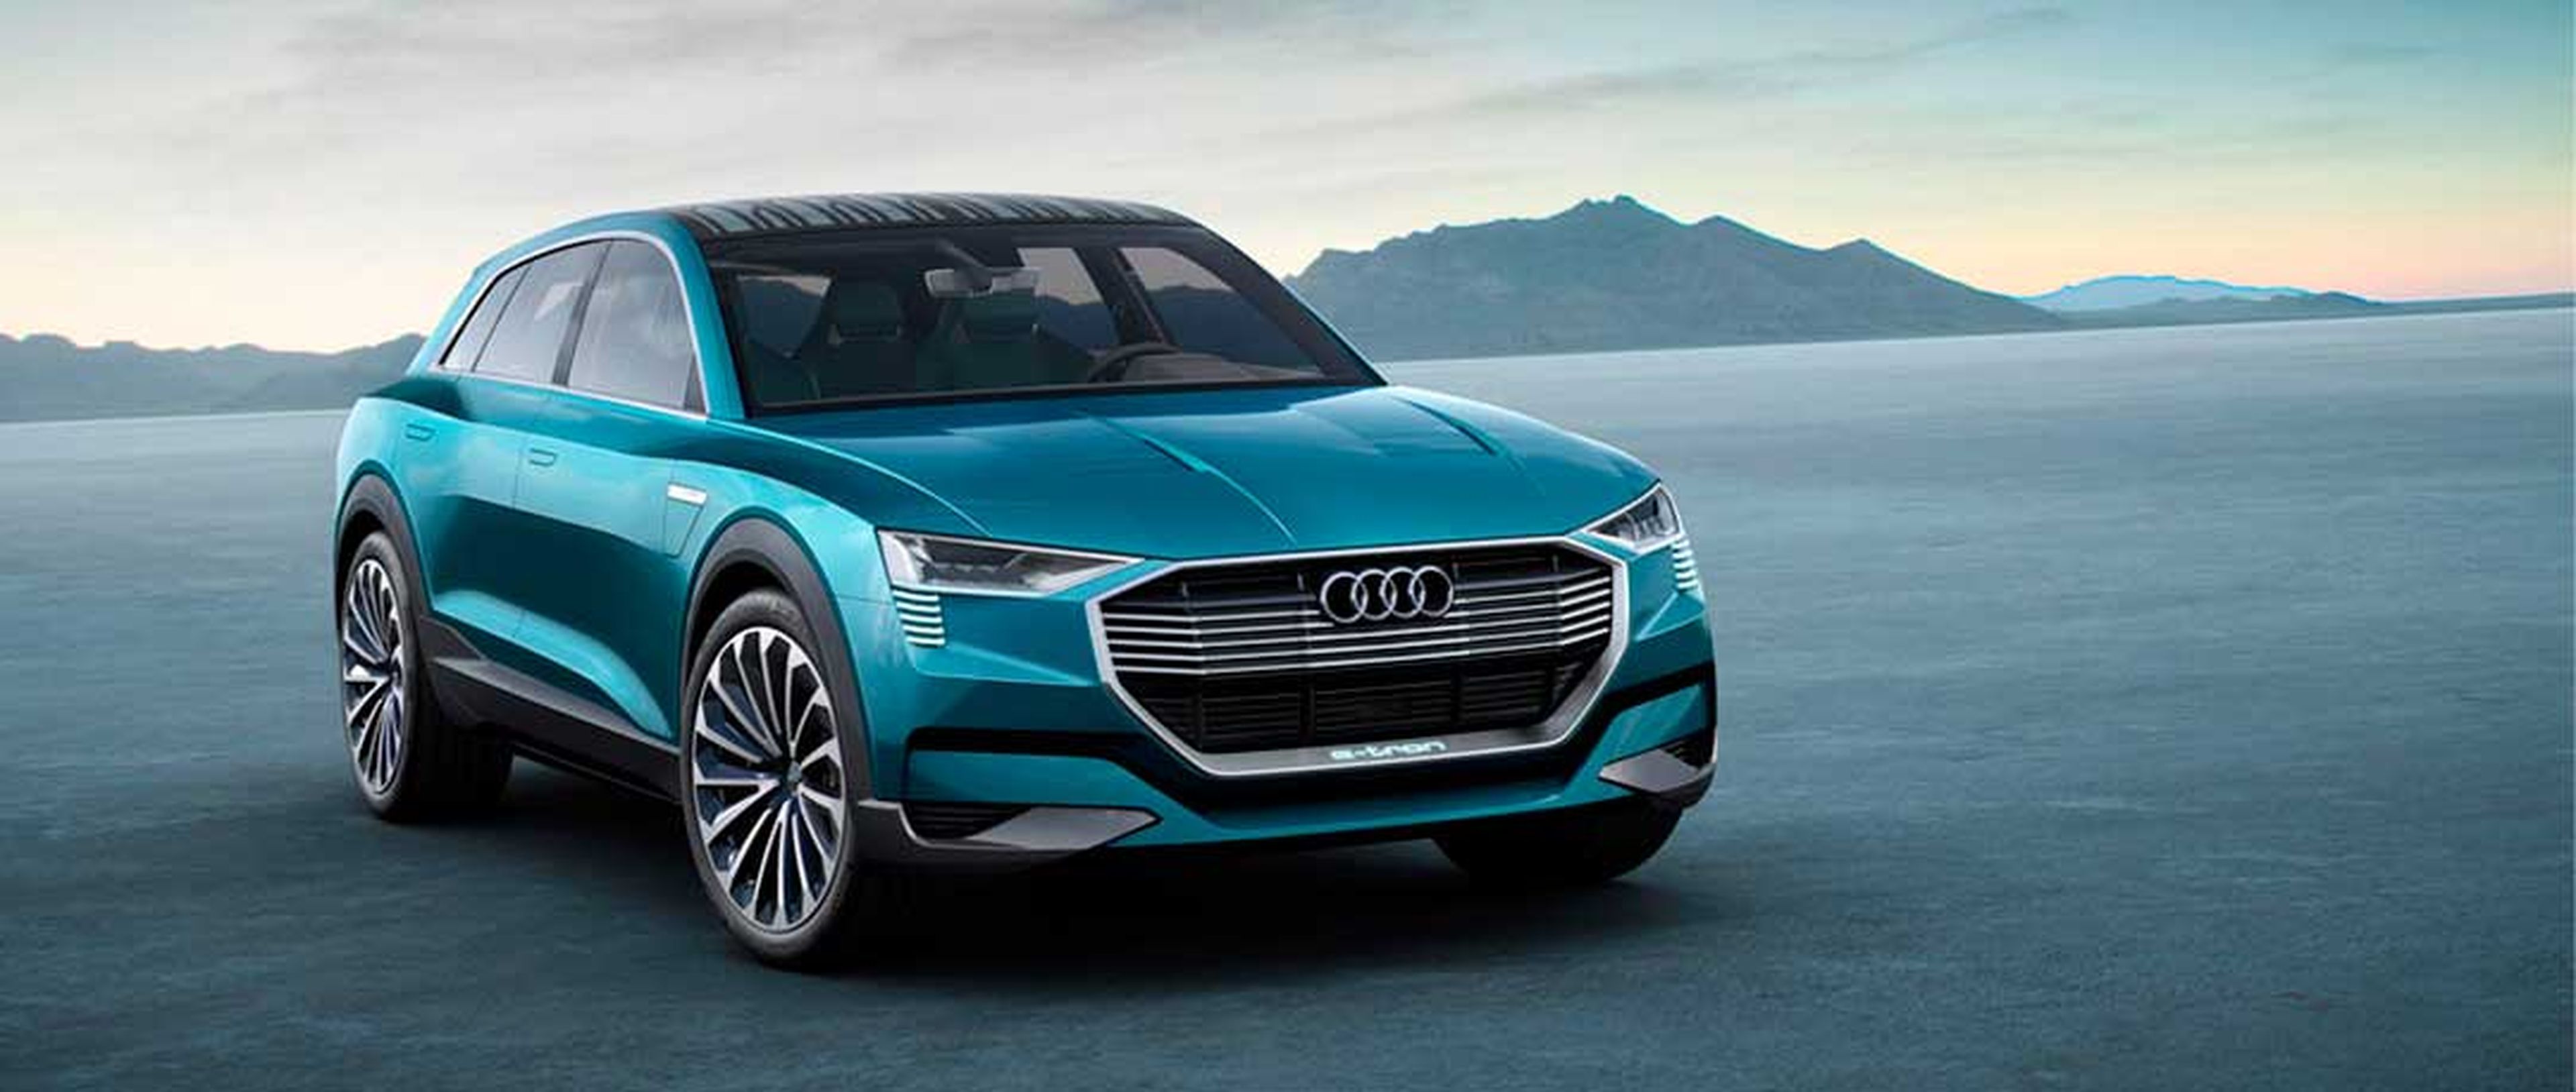 El coche eléctrico de Audi